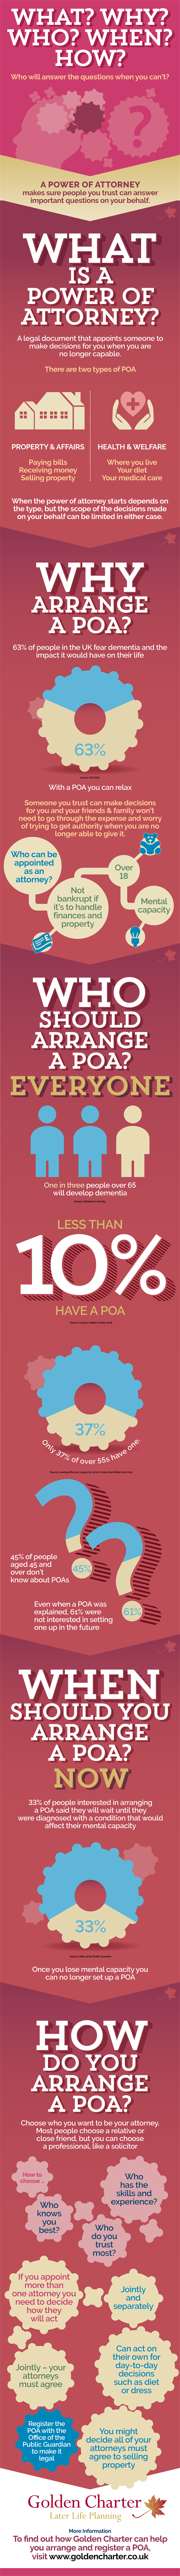 Poa
Infographic